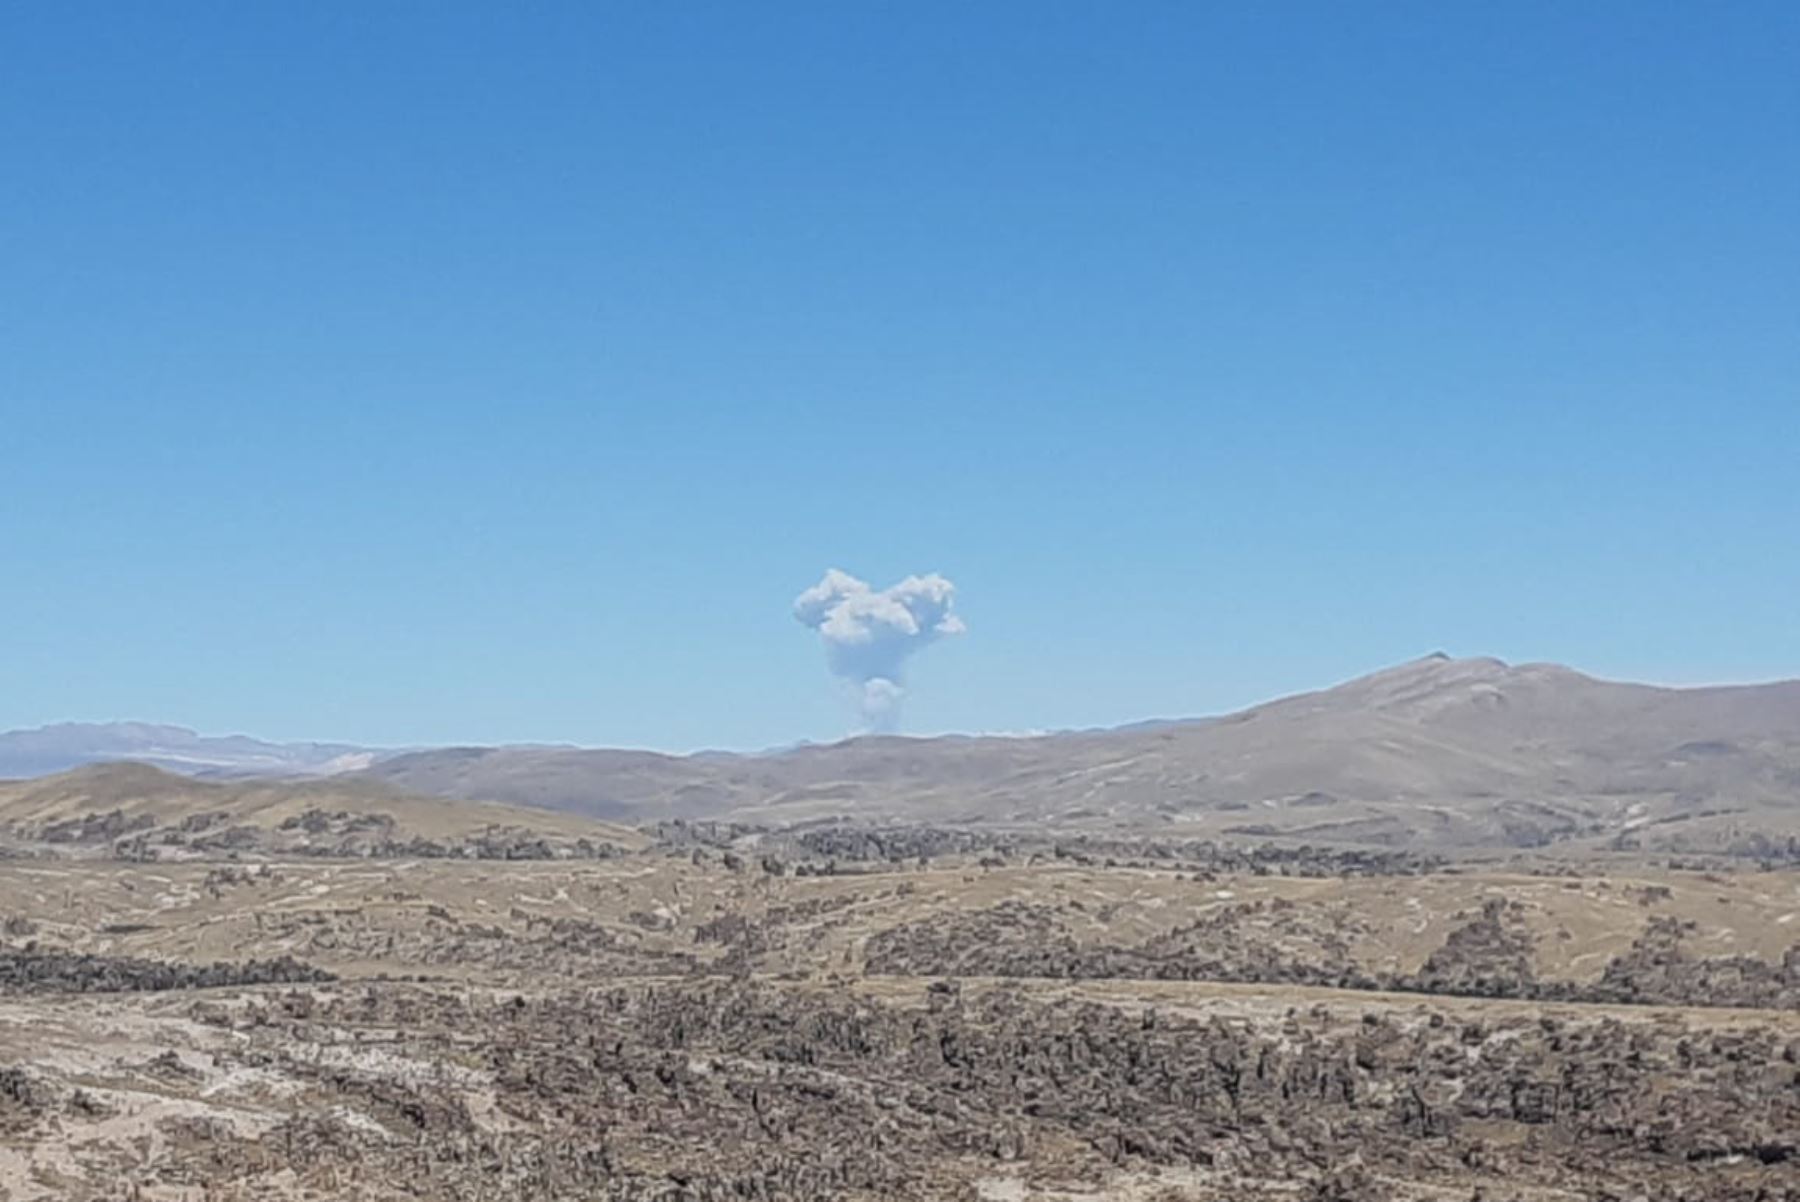 El volcán Sabancaya, ubicado en el departamento de Arequipa, se encuentra en proceso eruptivo desde noviembre del 2016. Foto: Ingemmet